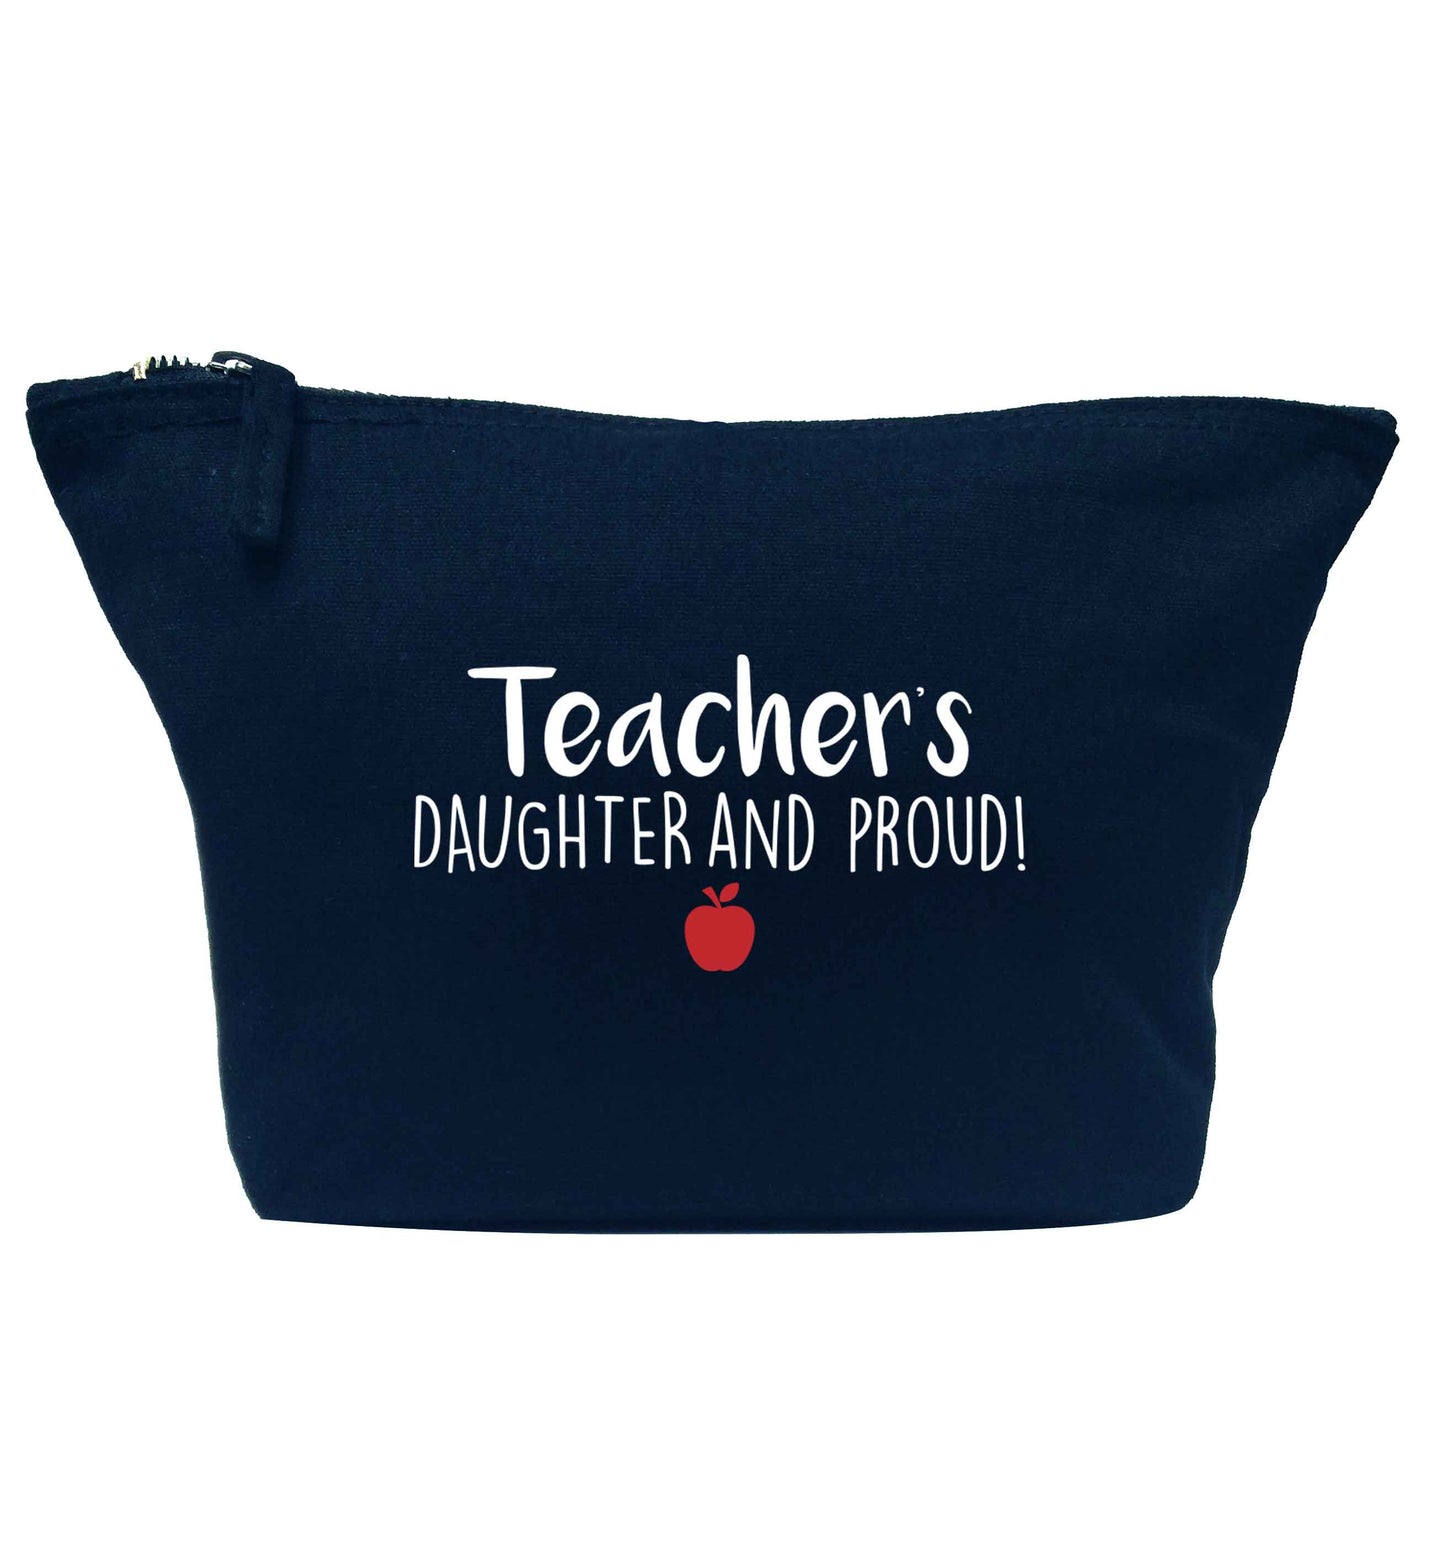 Teachers daughter and proud navy makeup bag